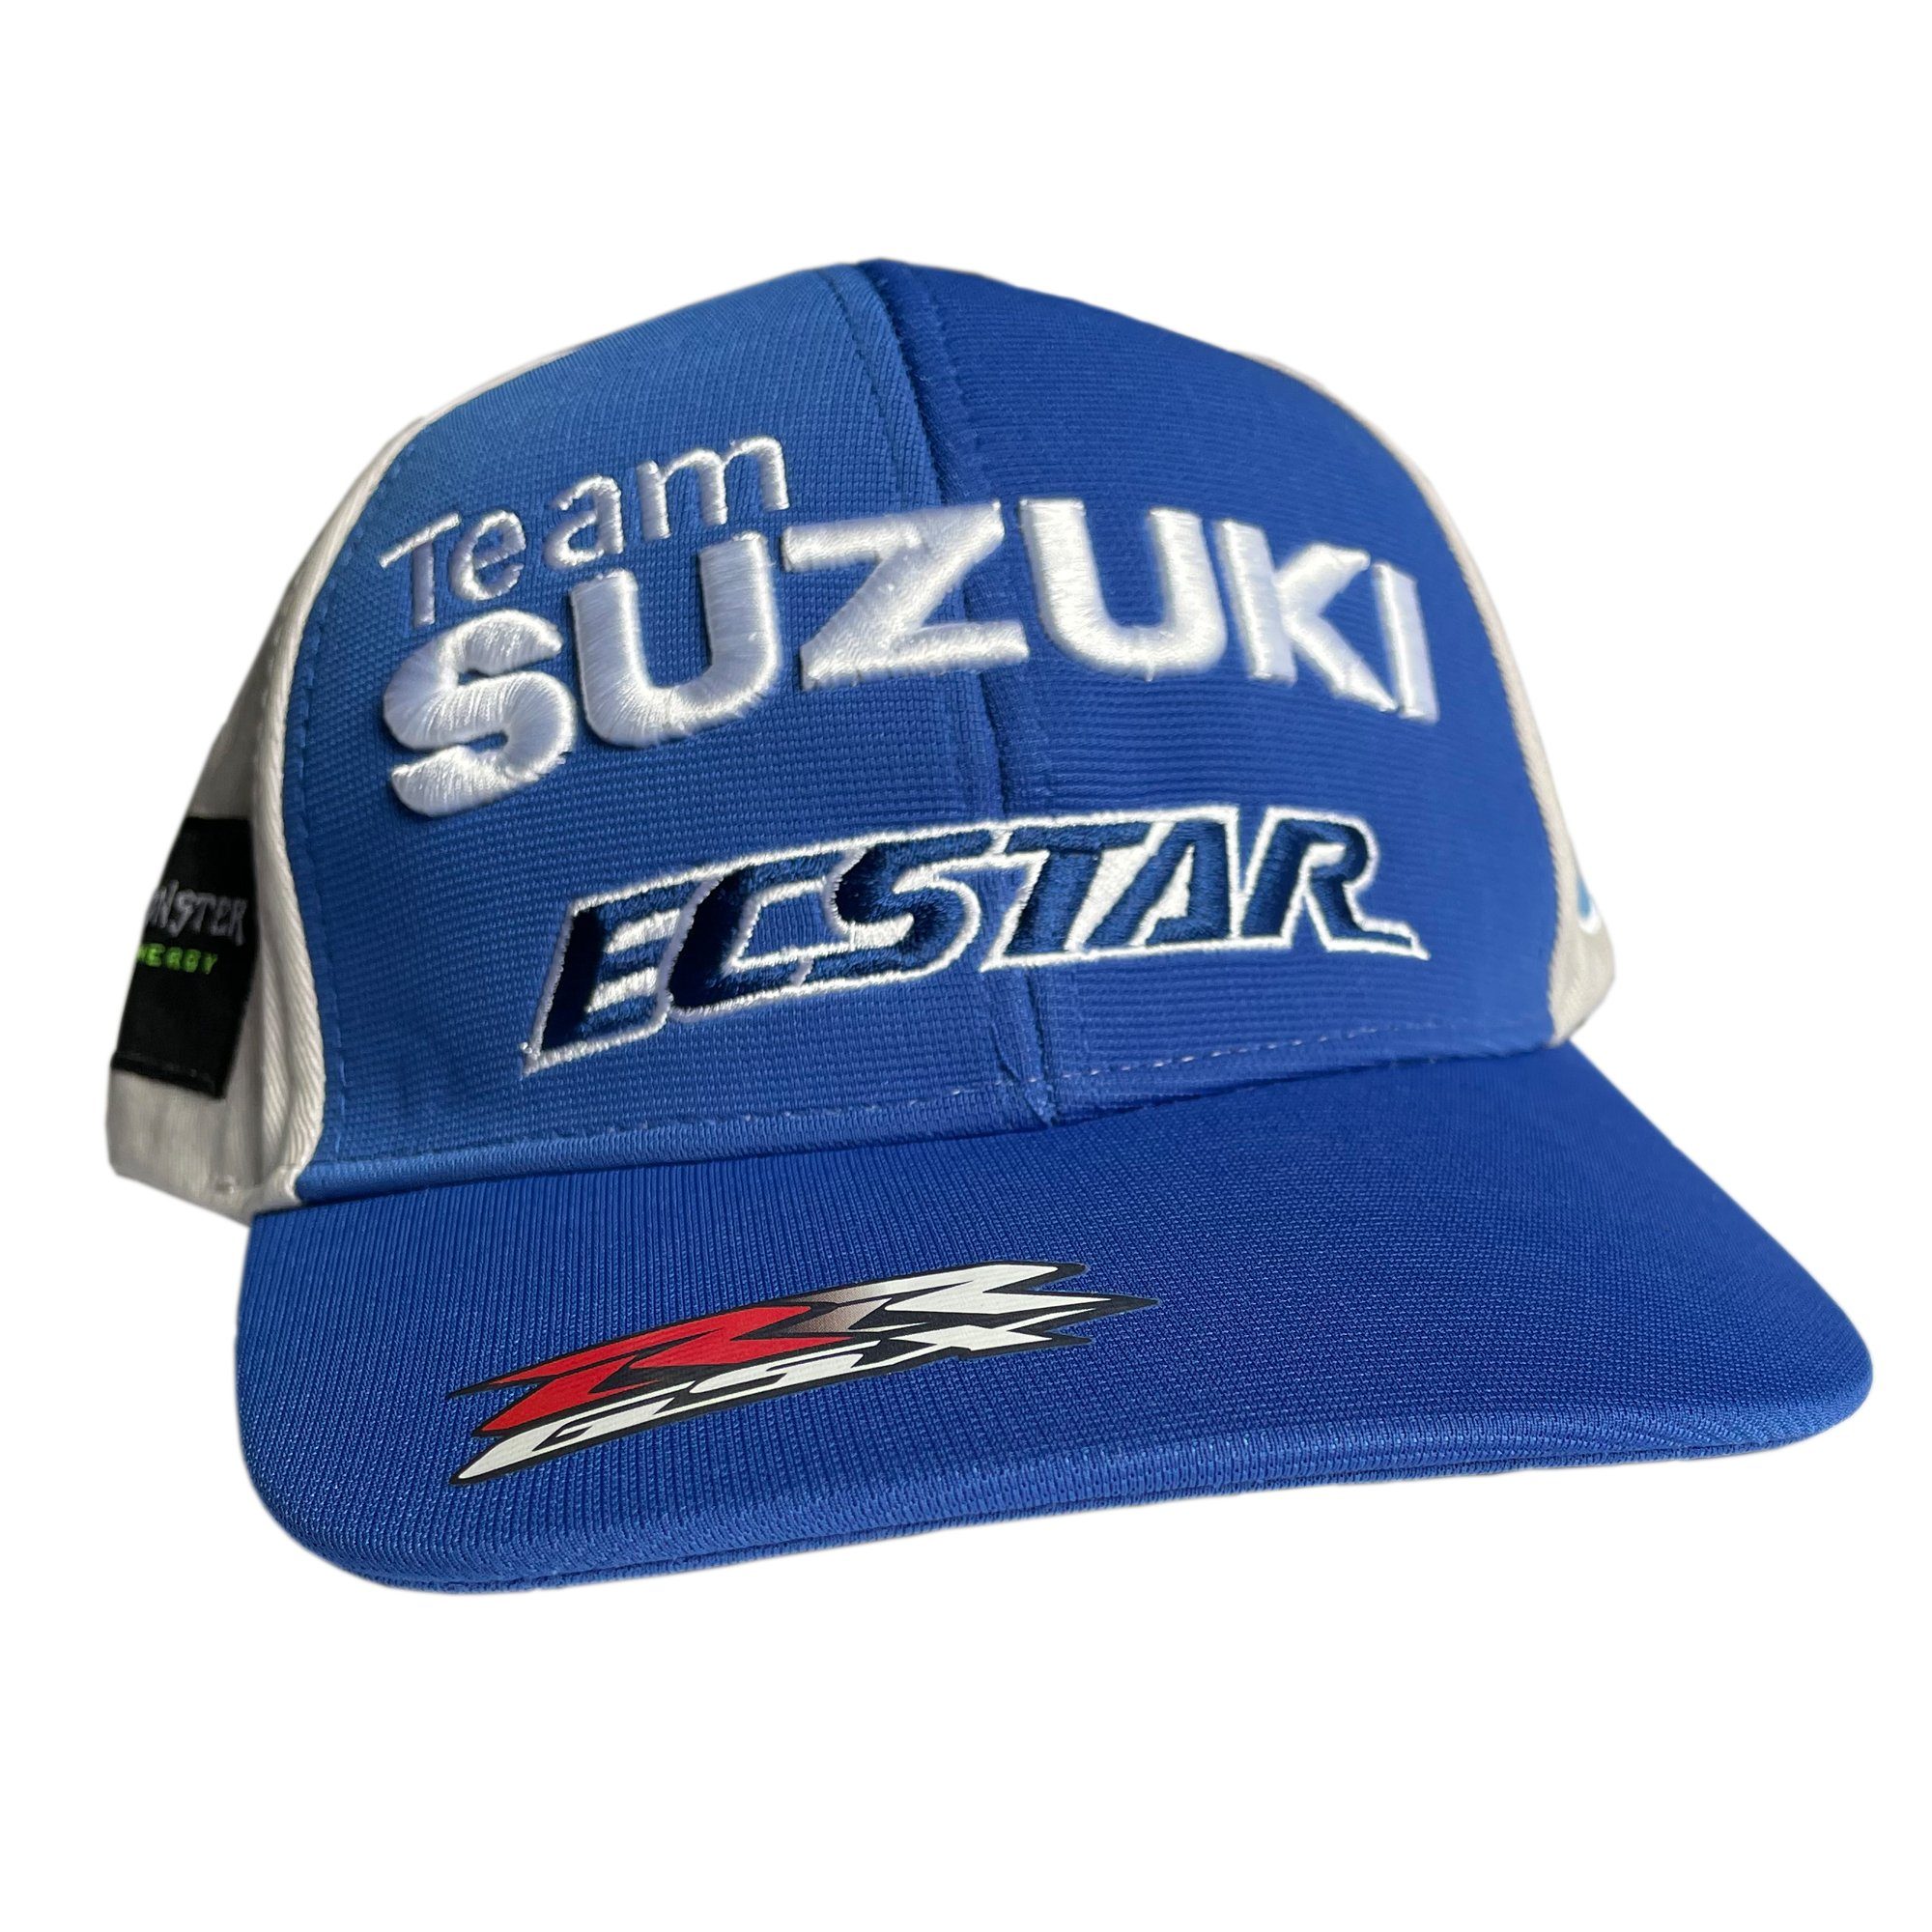 Ecstar SUZUKI Cap Schirmmütze Cap Ecstars Suzuki Base MotoGP MotoGP